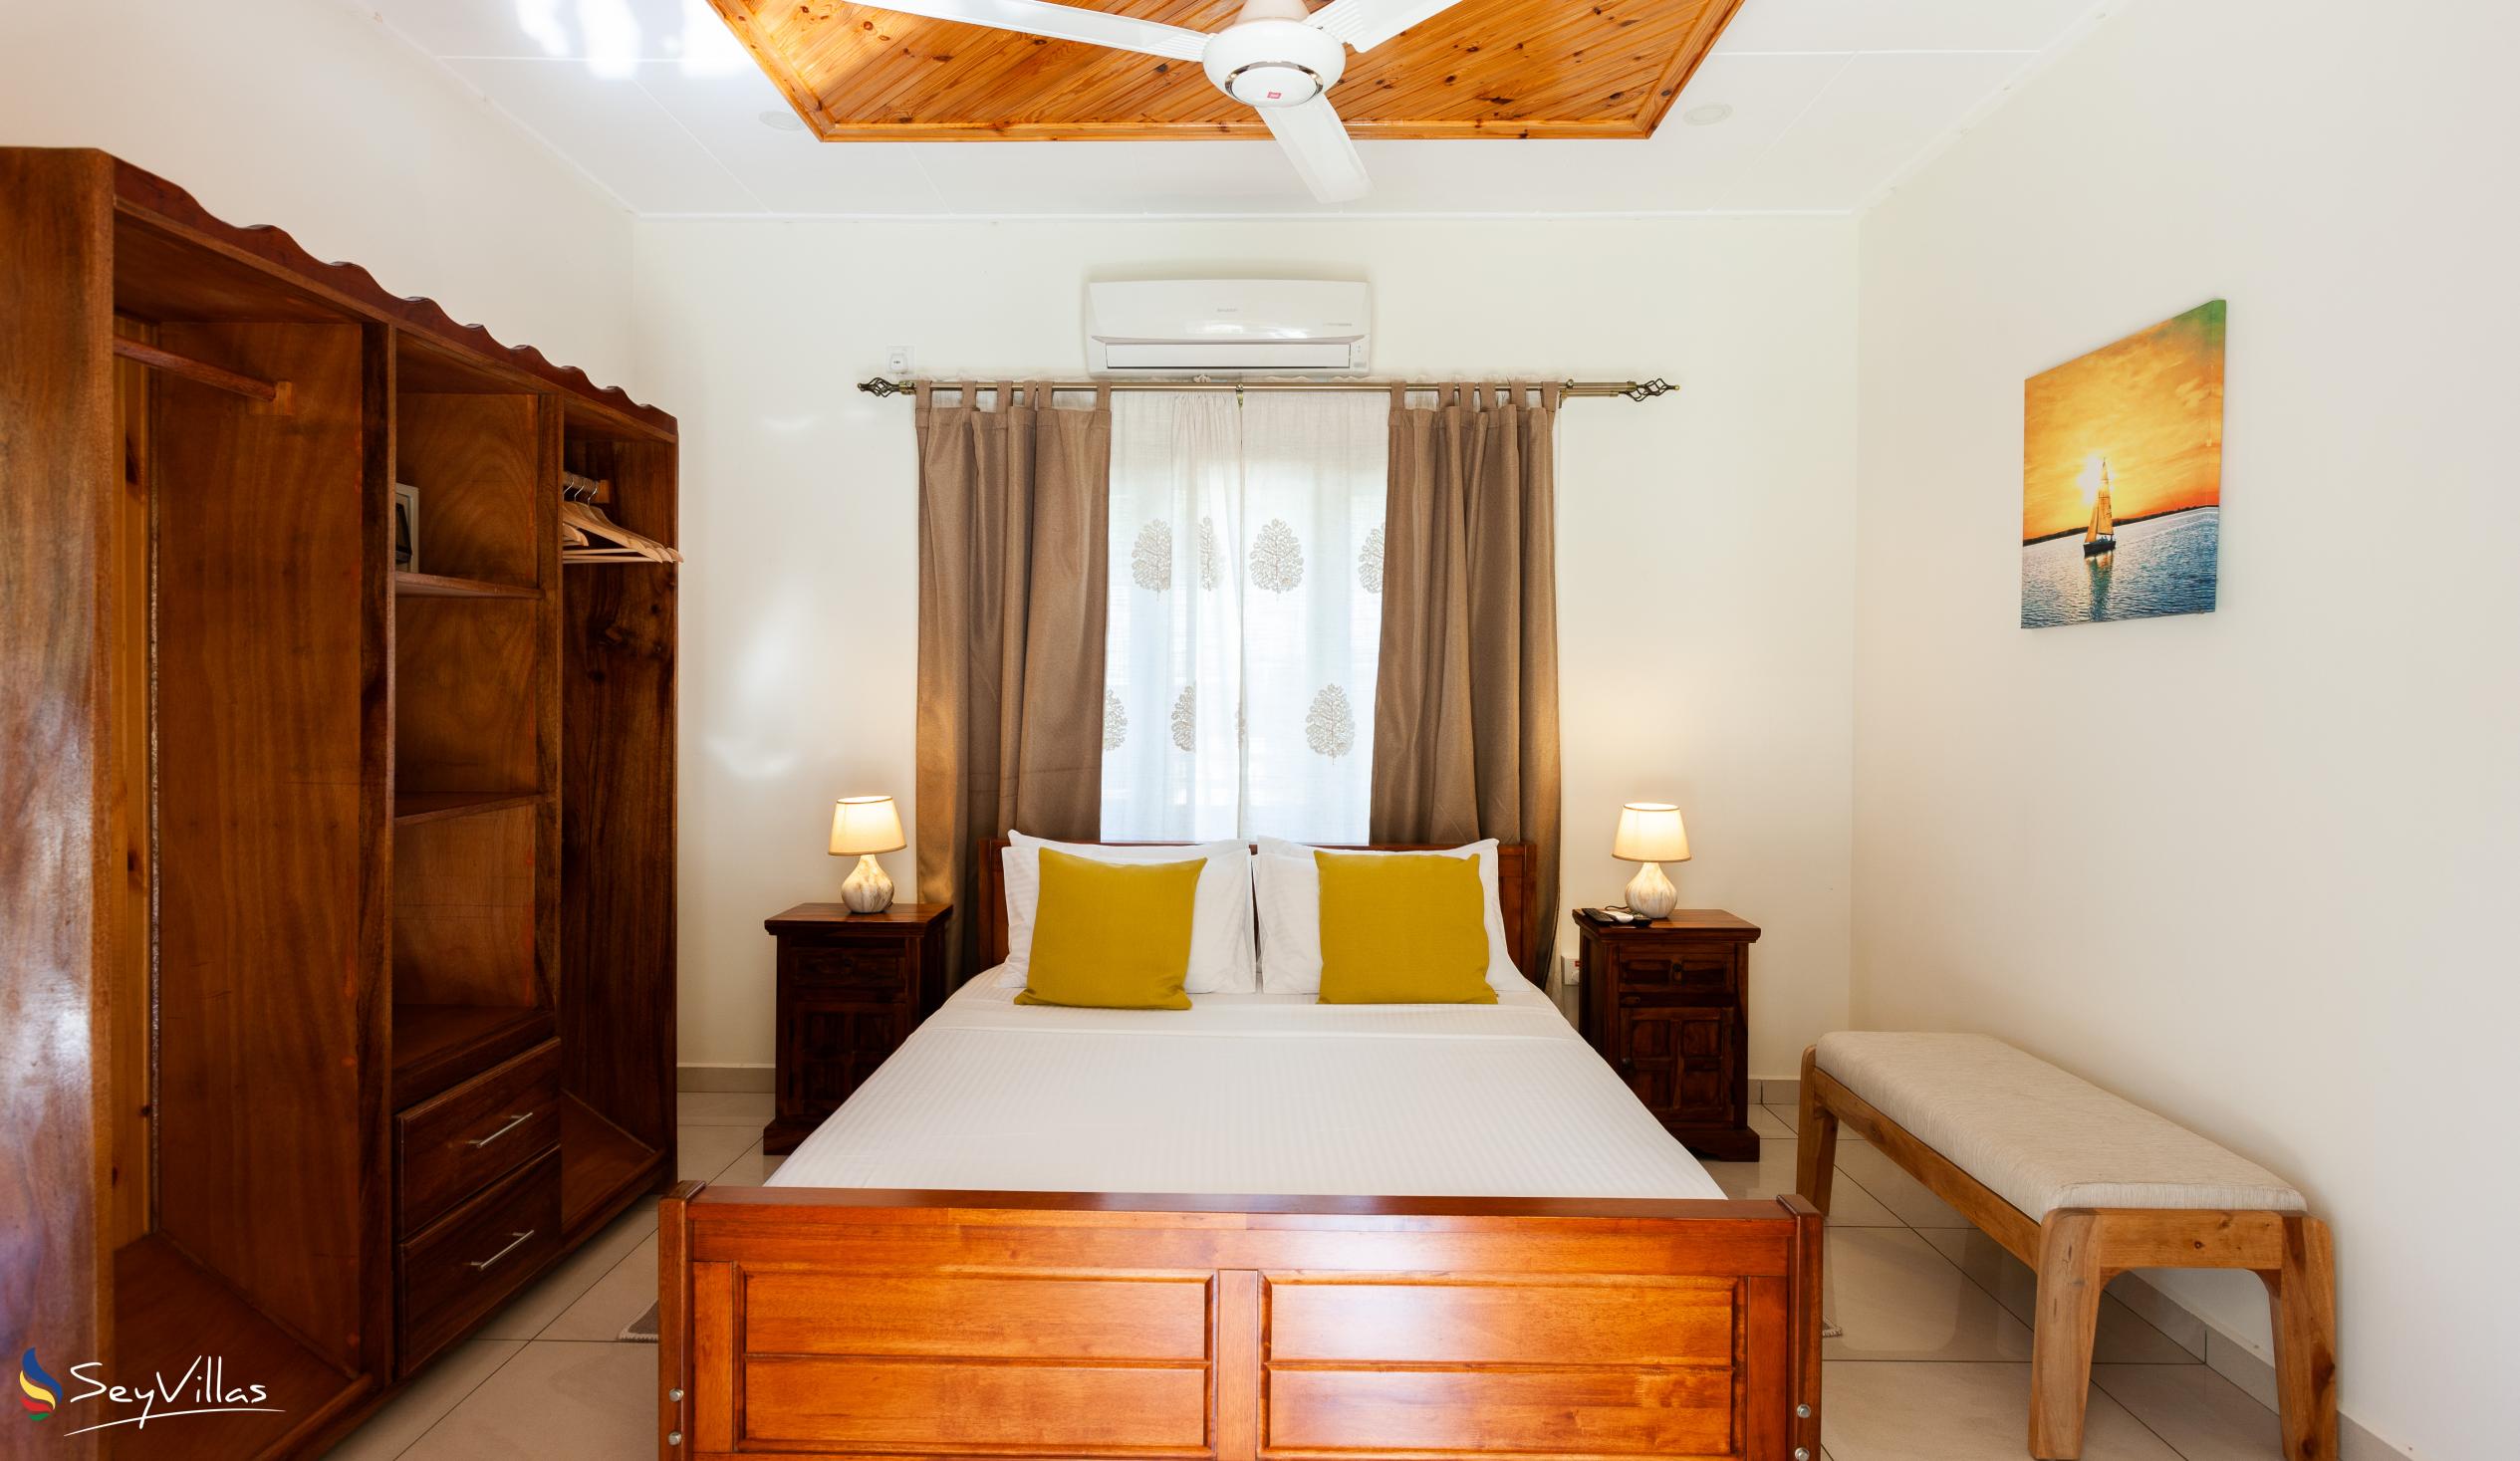 Photo 23: Maison Ed-Elle - 1-Bedroom Apartment - La Digue (Seychelles)